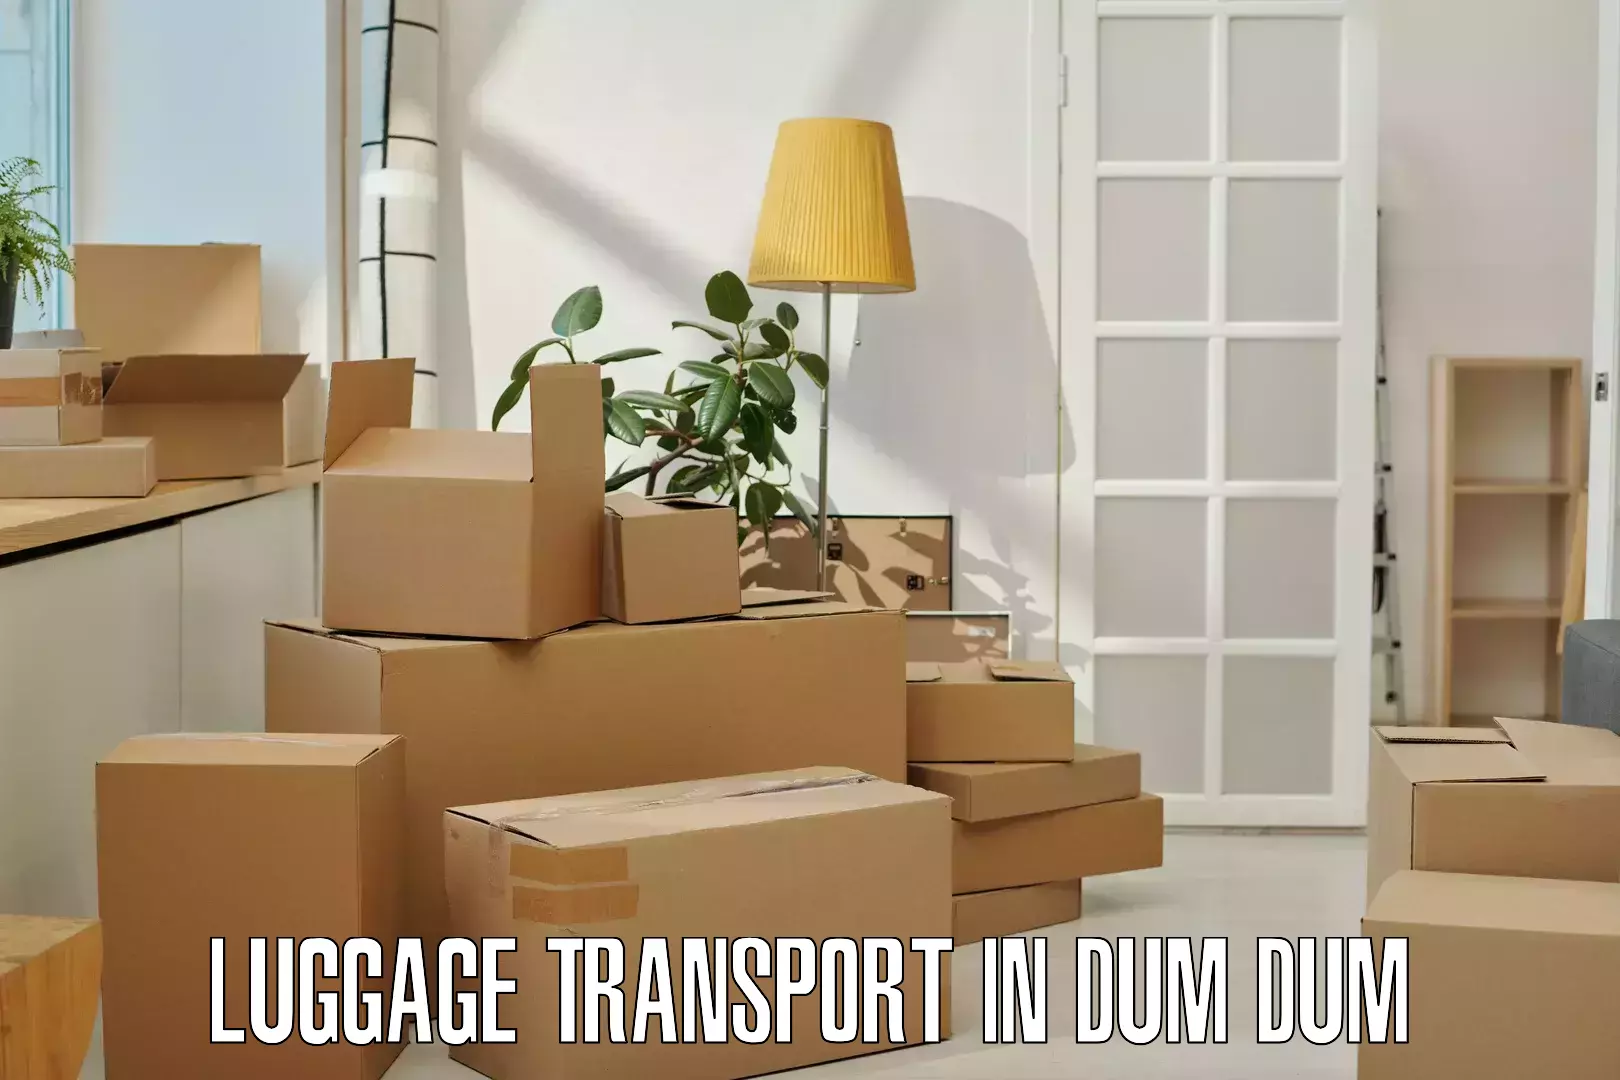 Premium luggage delivery in Dum Dum